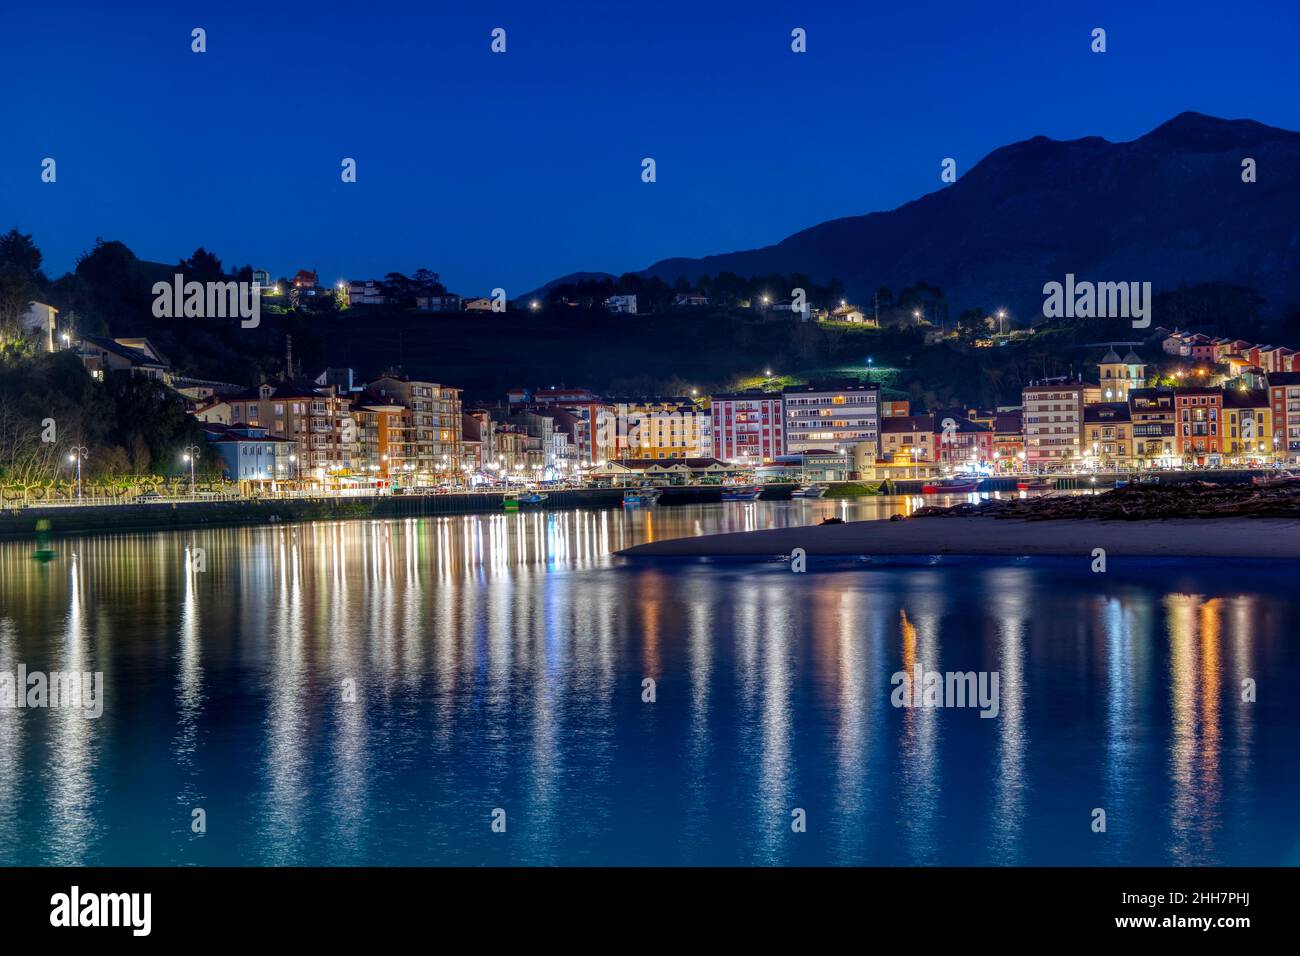 Entrada al puerto de Ribadesella, con la playa de Santa Marina, en una noche estrellada. Asturias, España. Foto de stock